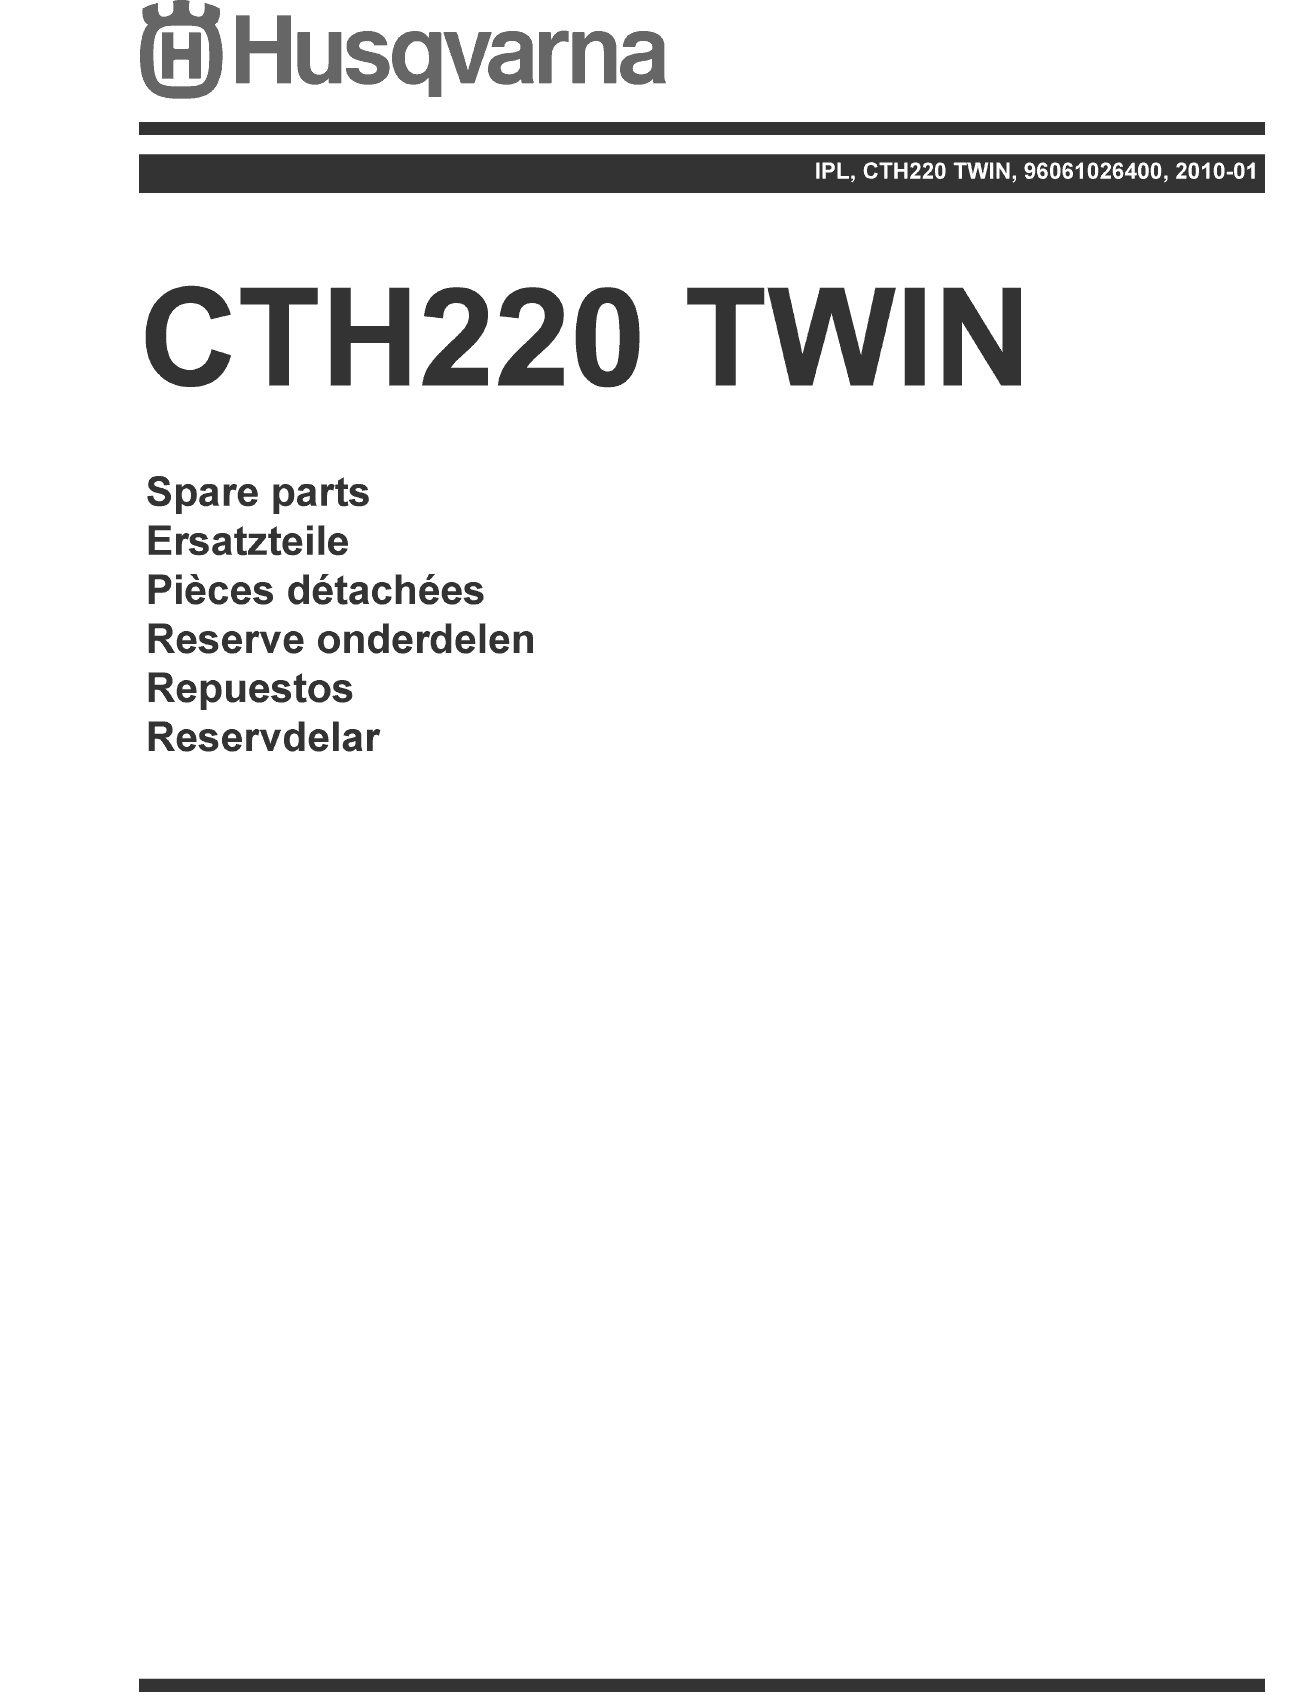 Husqvarna CTH220 Twin (2010-01) (96061026400)